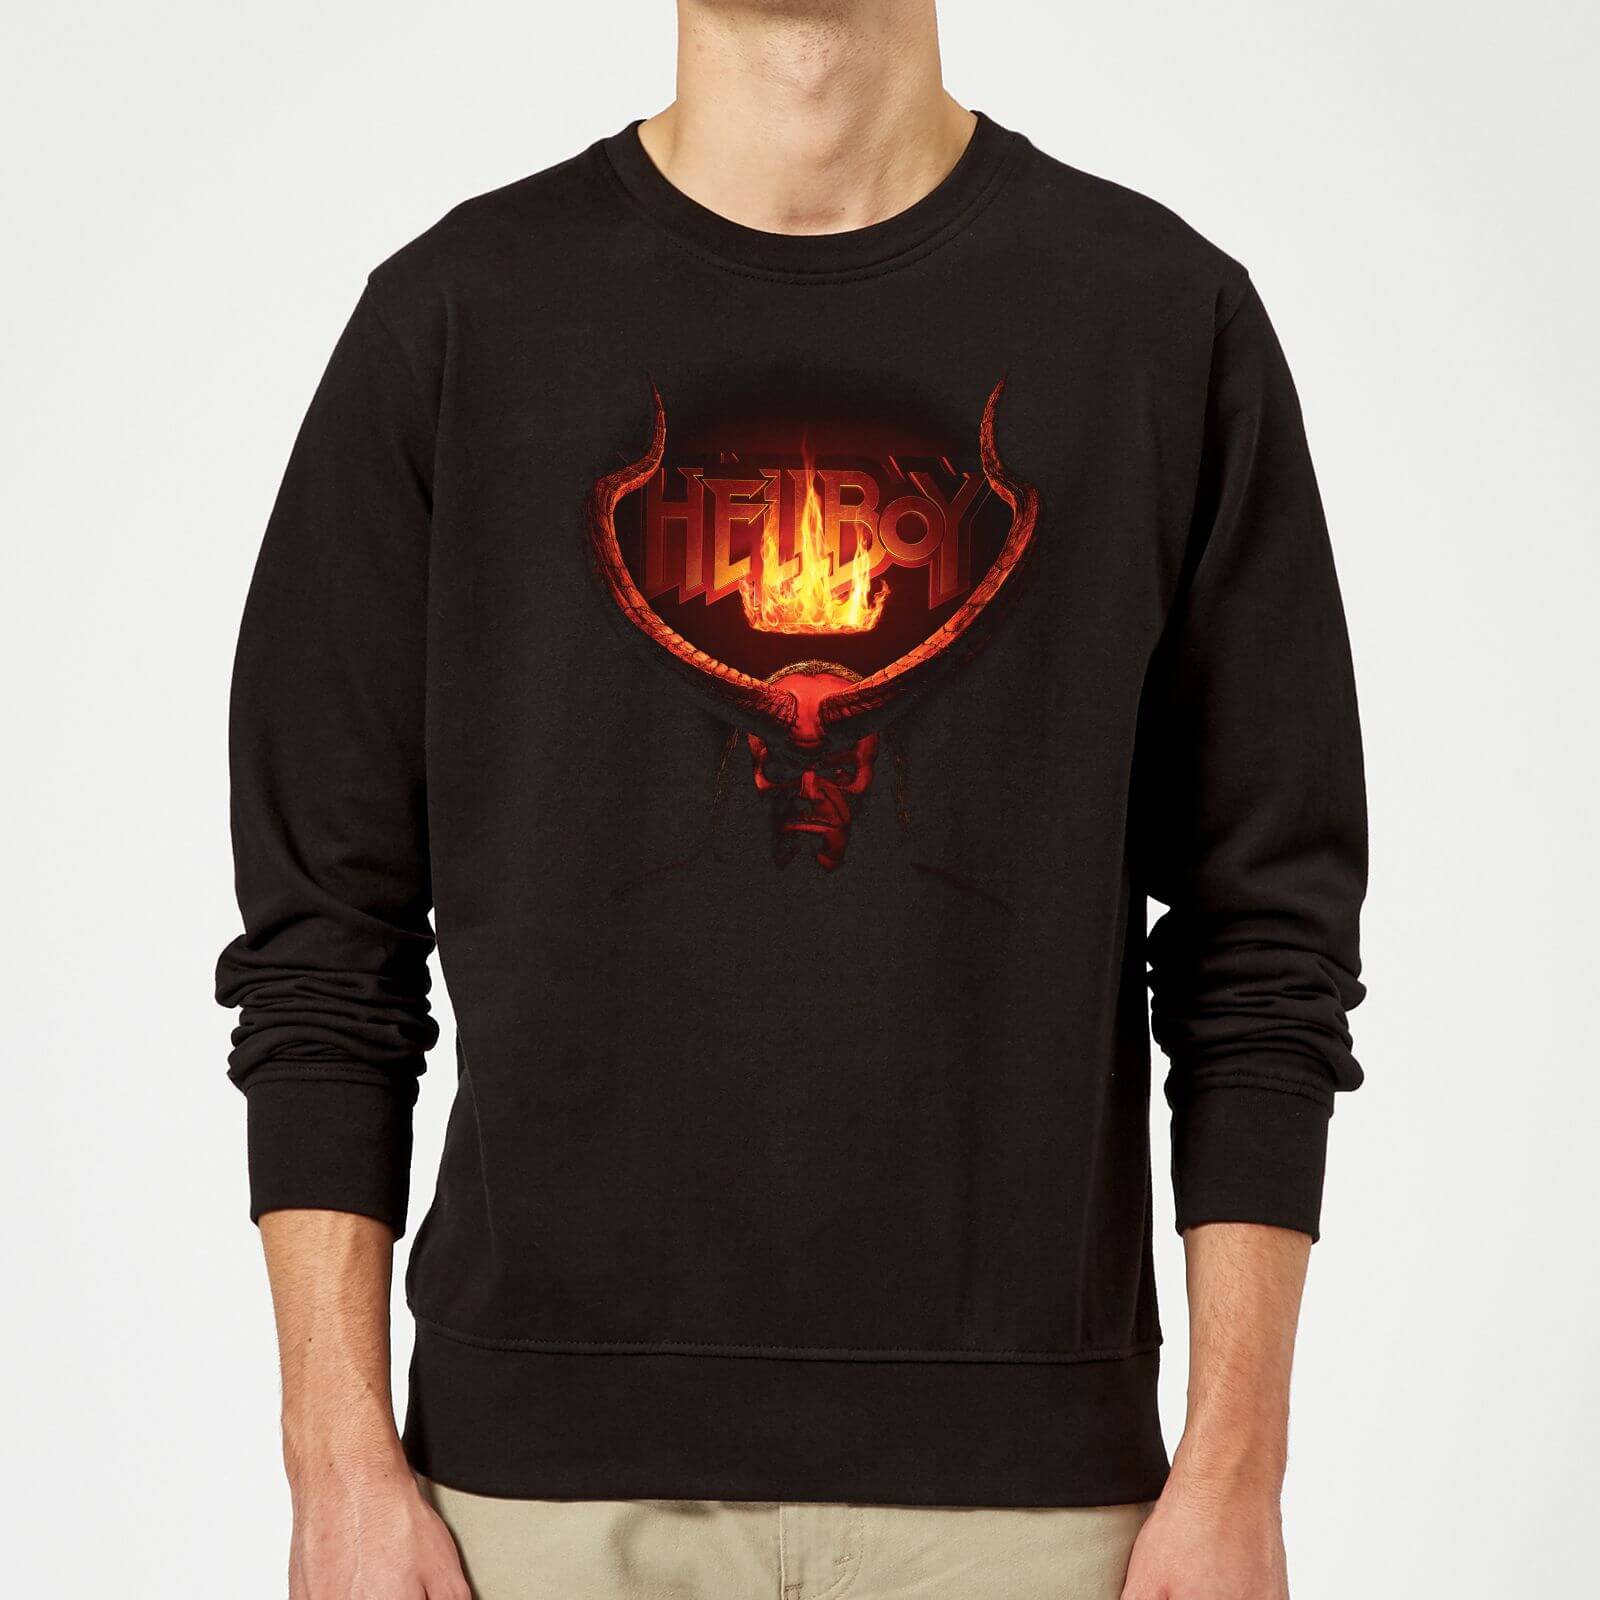 Hellboy Beast Of The Apocalypse Sweatshirt - Black - 5XL - Negro